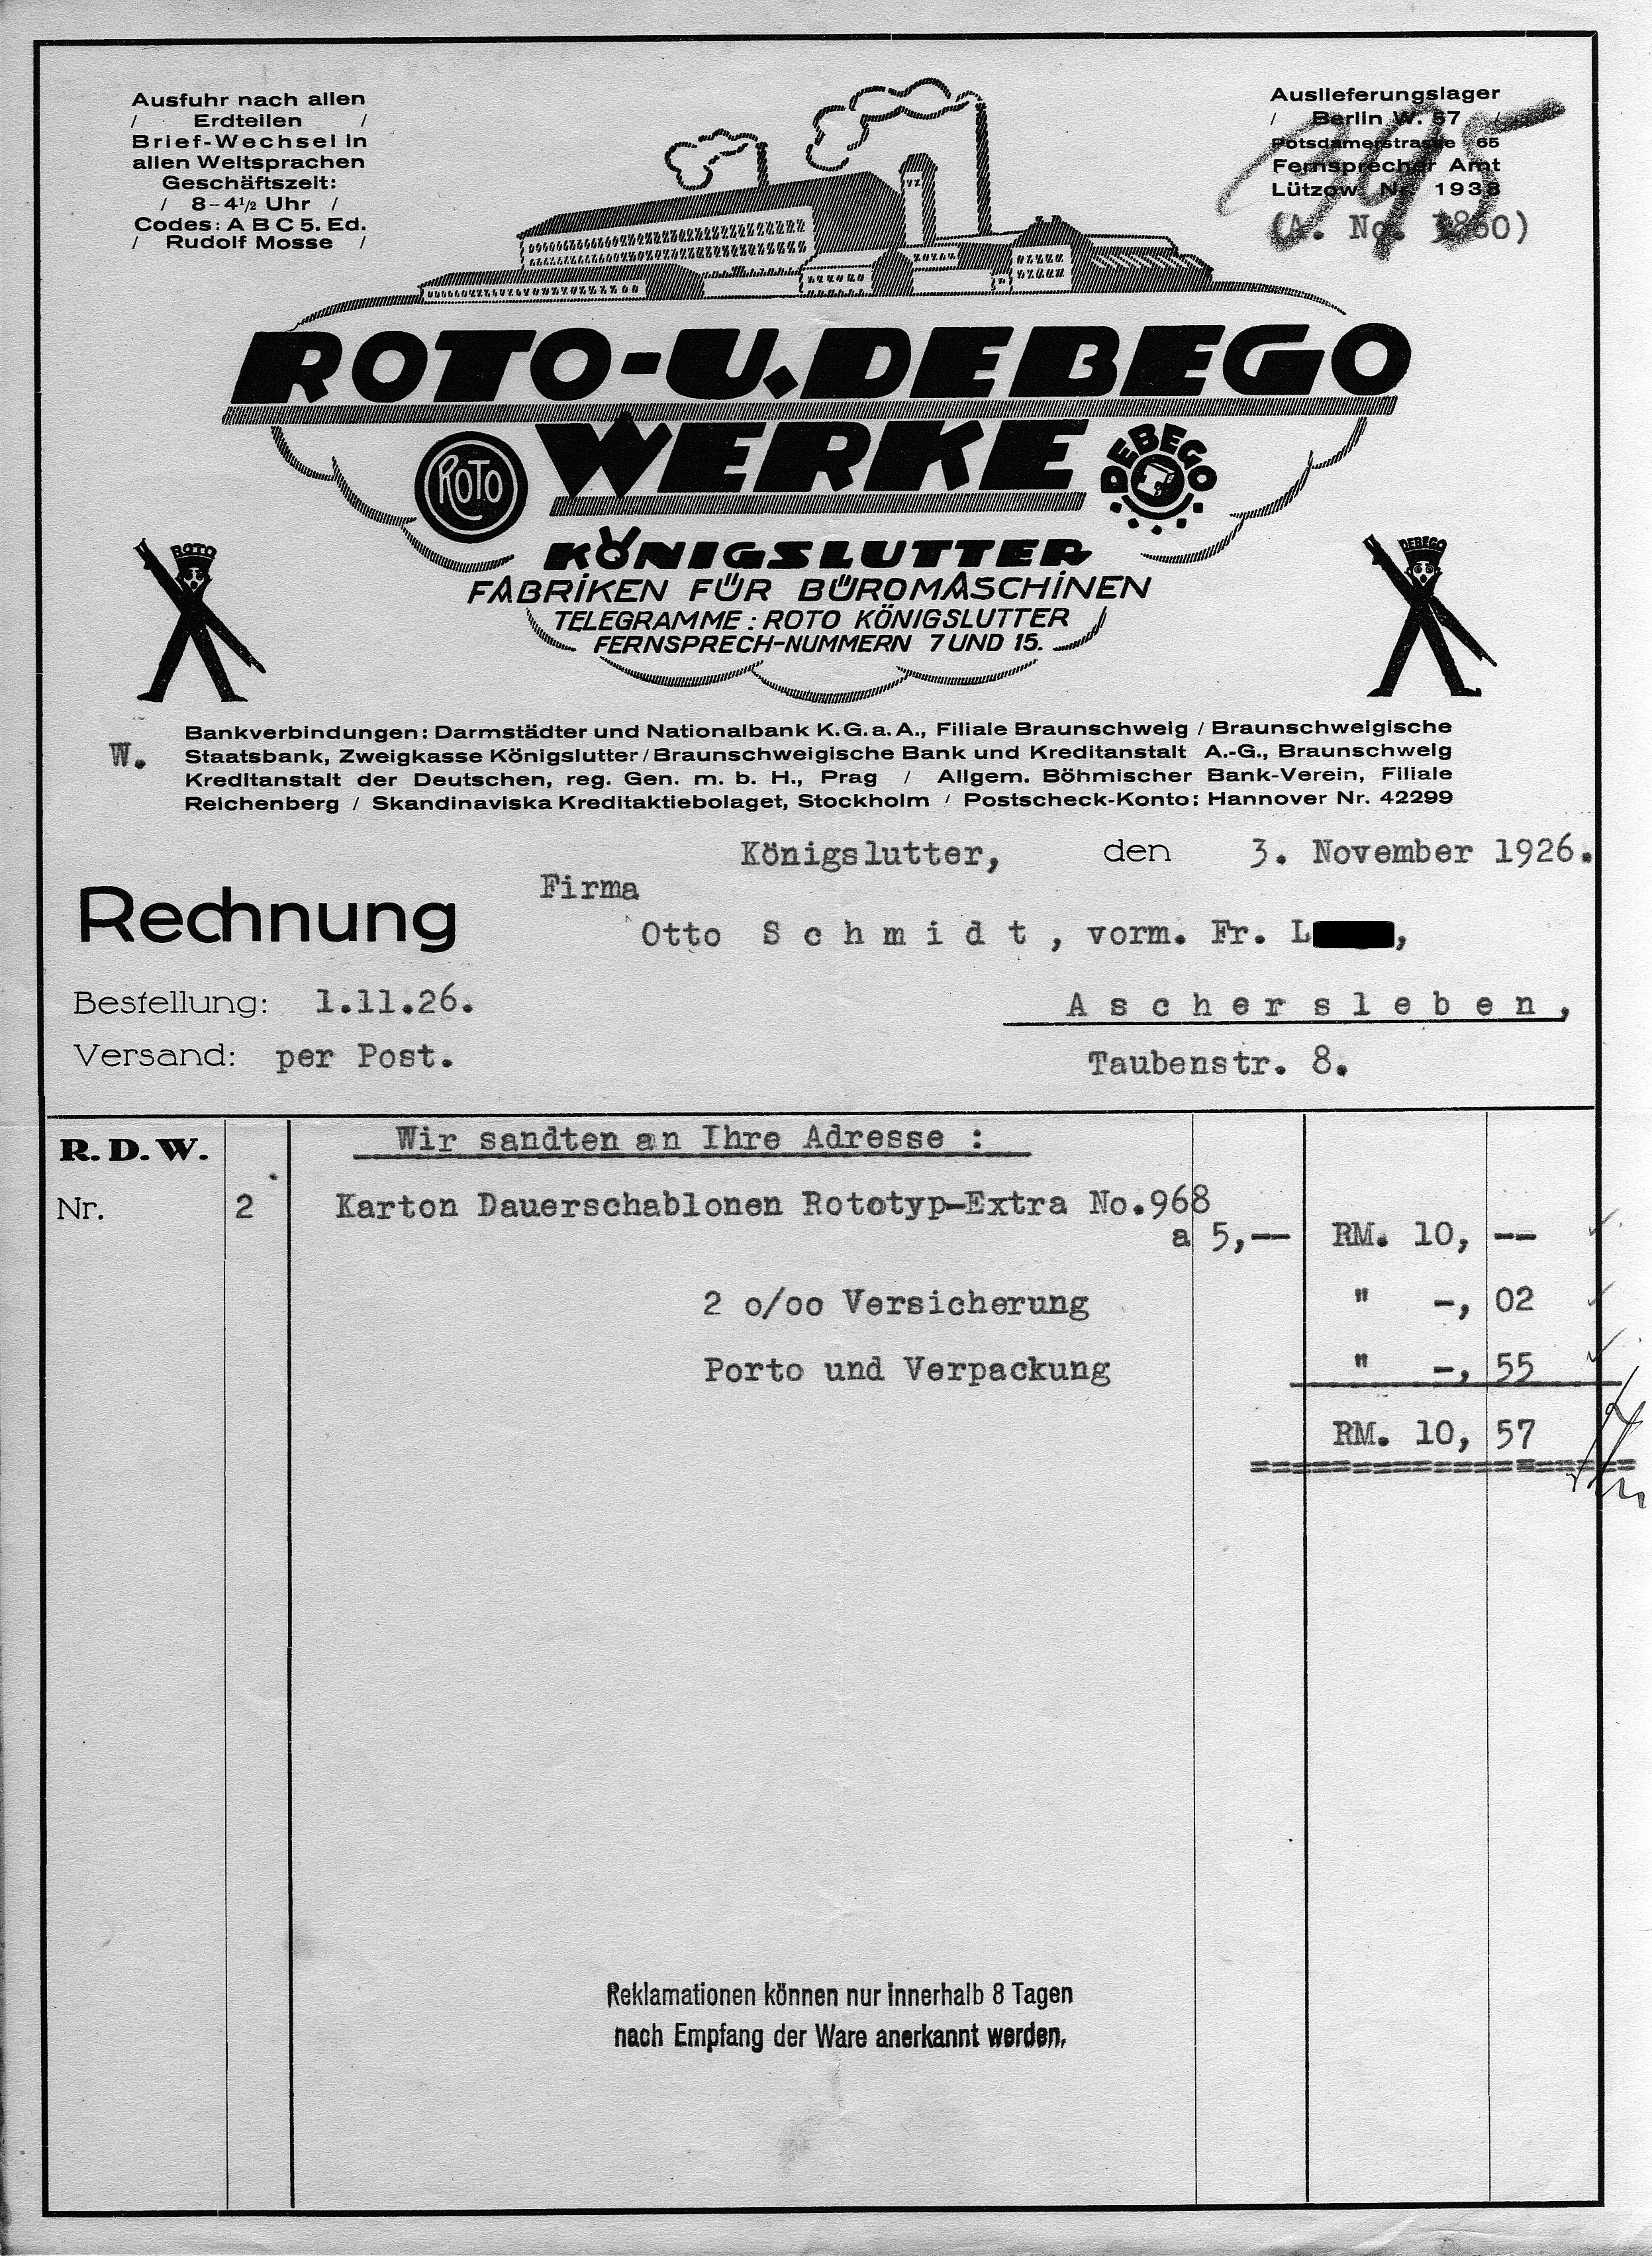 Vergleichs-Rechnung der ROTO-Werke vom 3.11.1926, 2 Karton Schablonen, eine Ein-heit 10 Stück kosten à 50 Pf. Privatbesitz